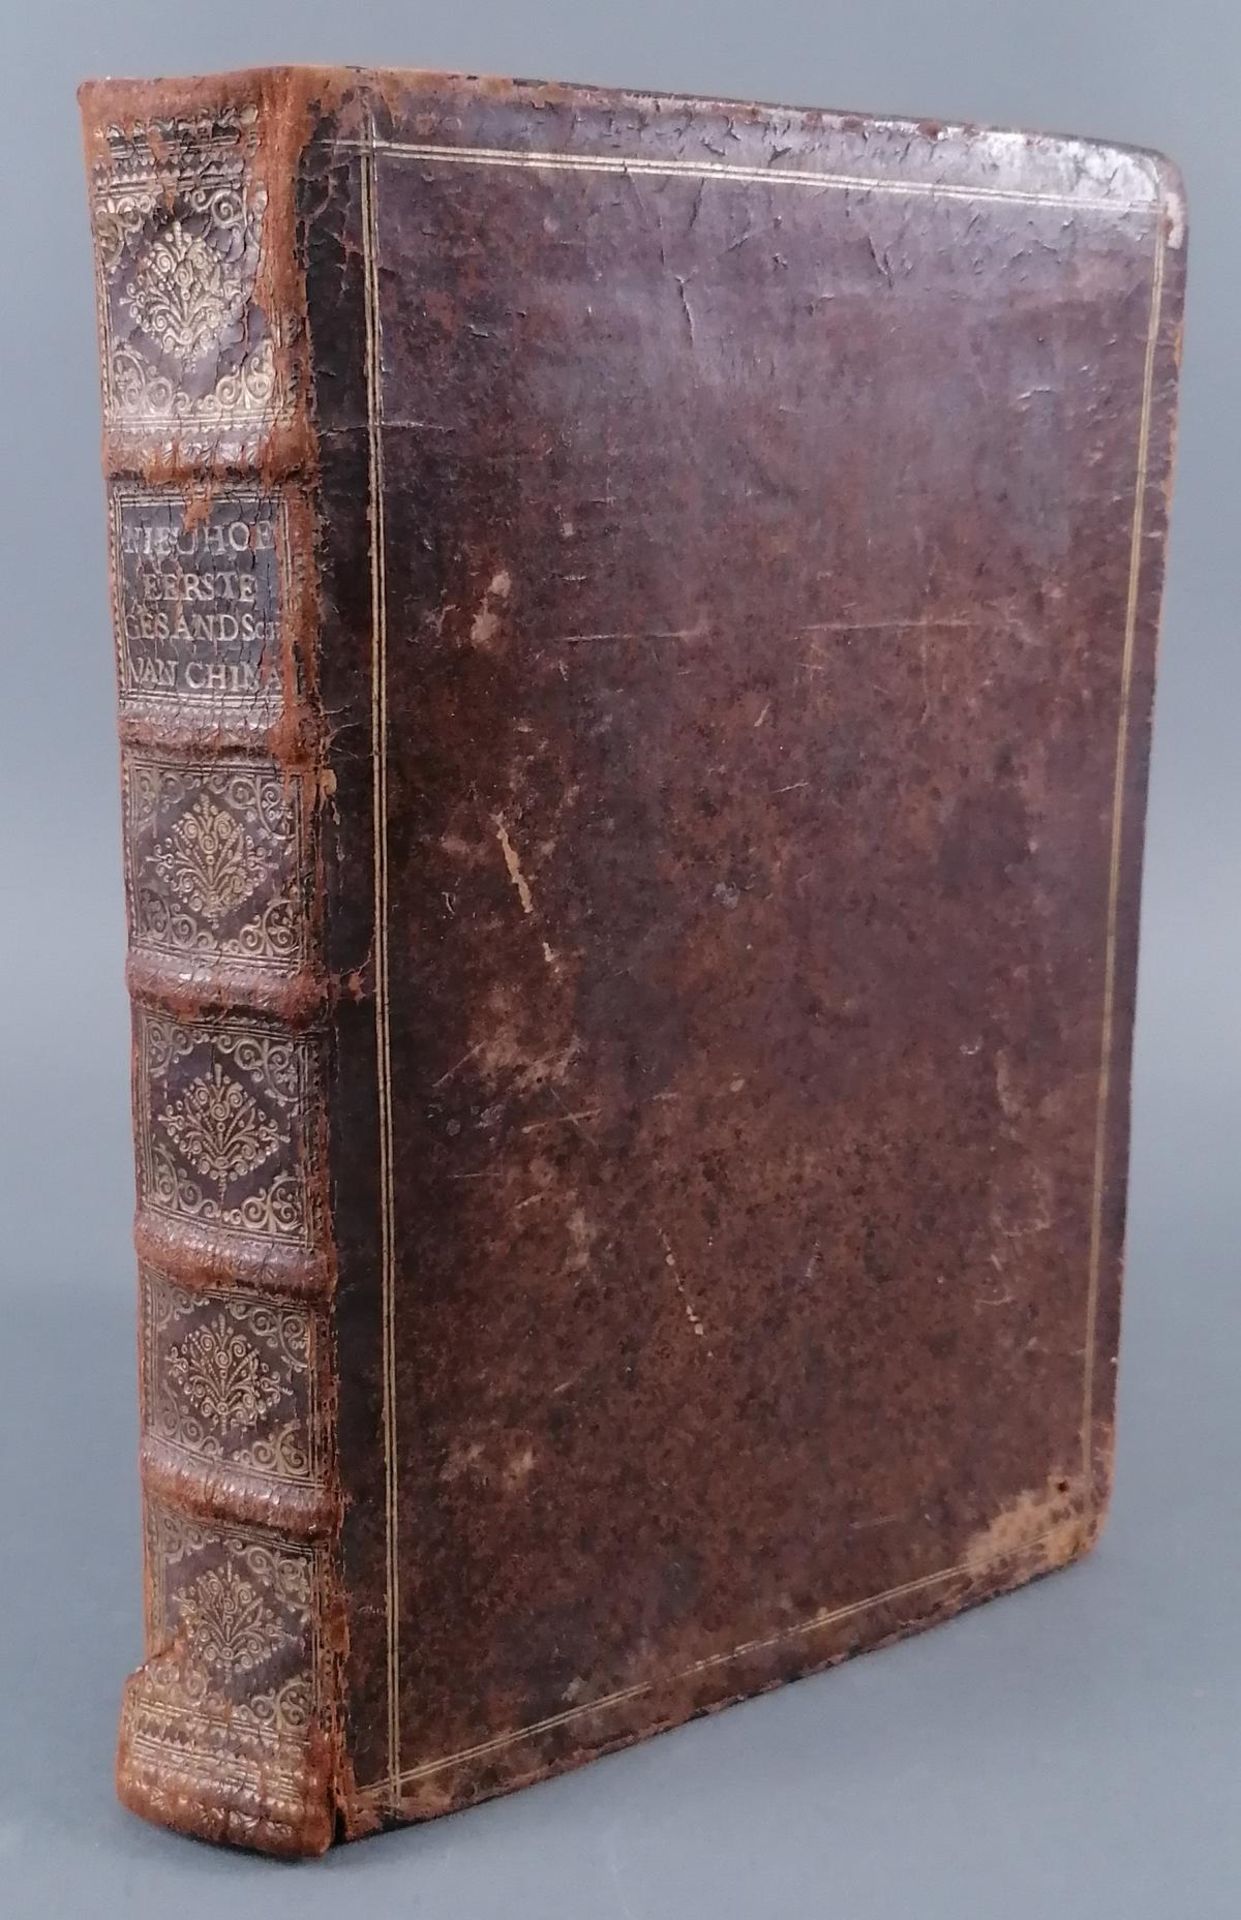 Nieuhofs China-Buch. 1665. (Die Gesandtschaft der Niederländischen Ostindienkompanie an den großen T